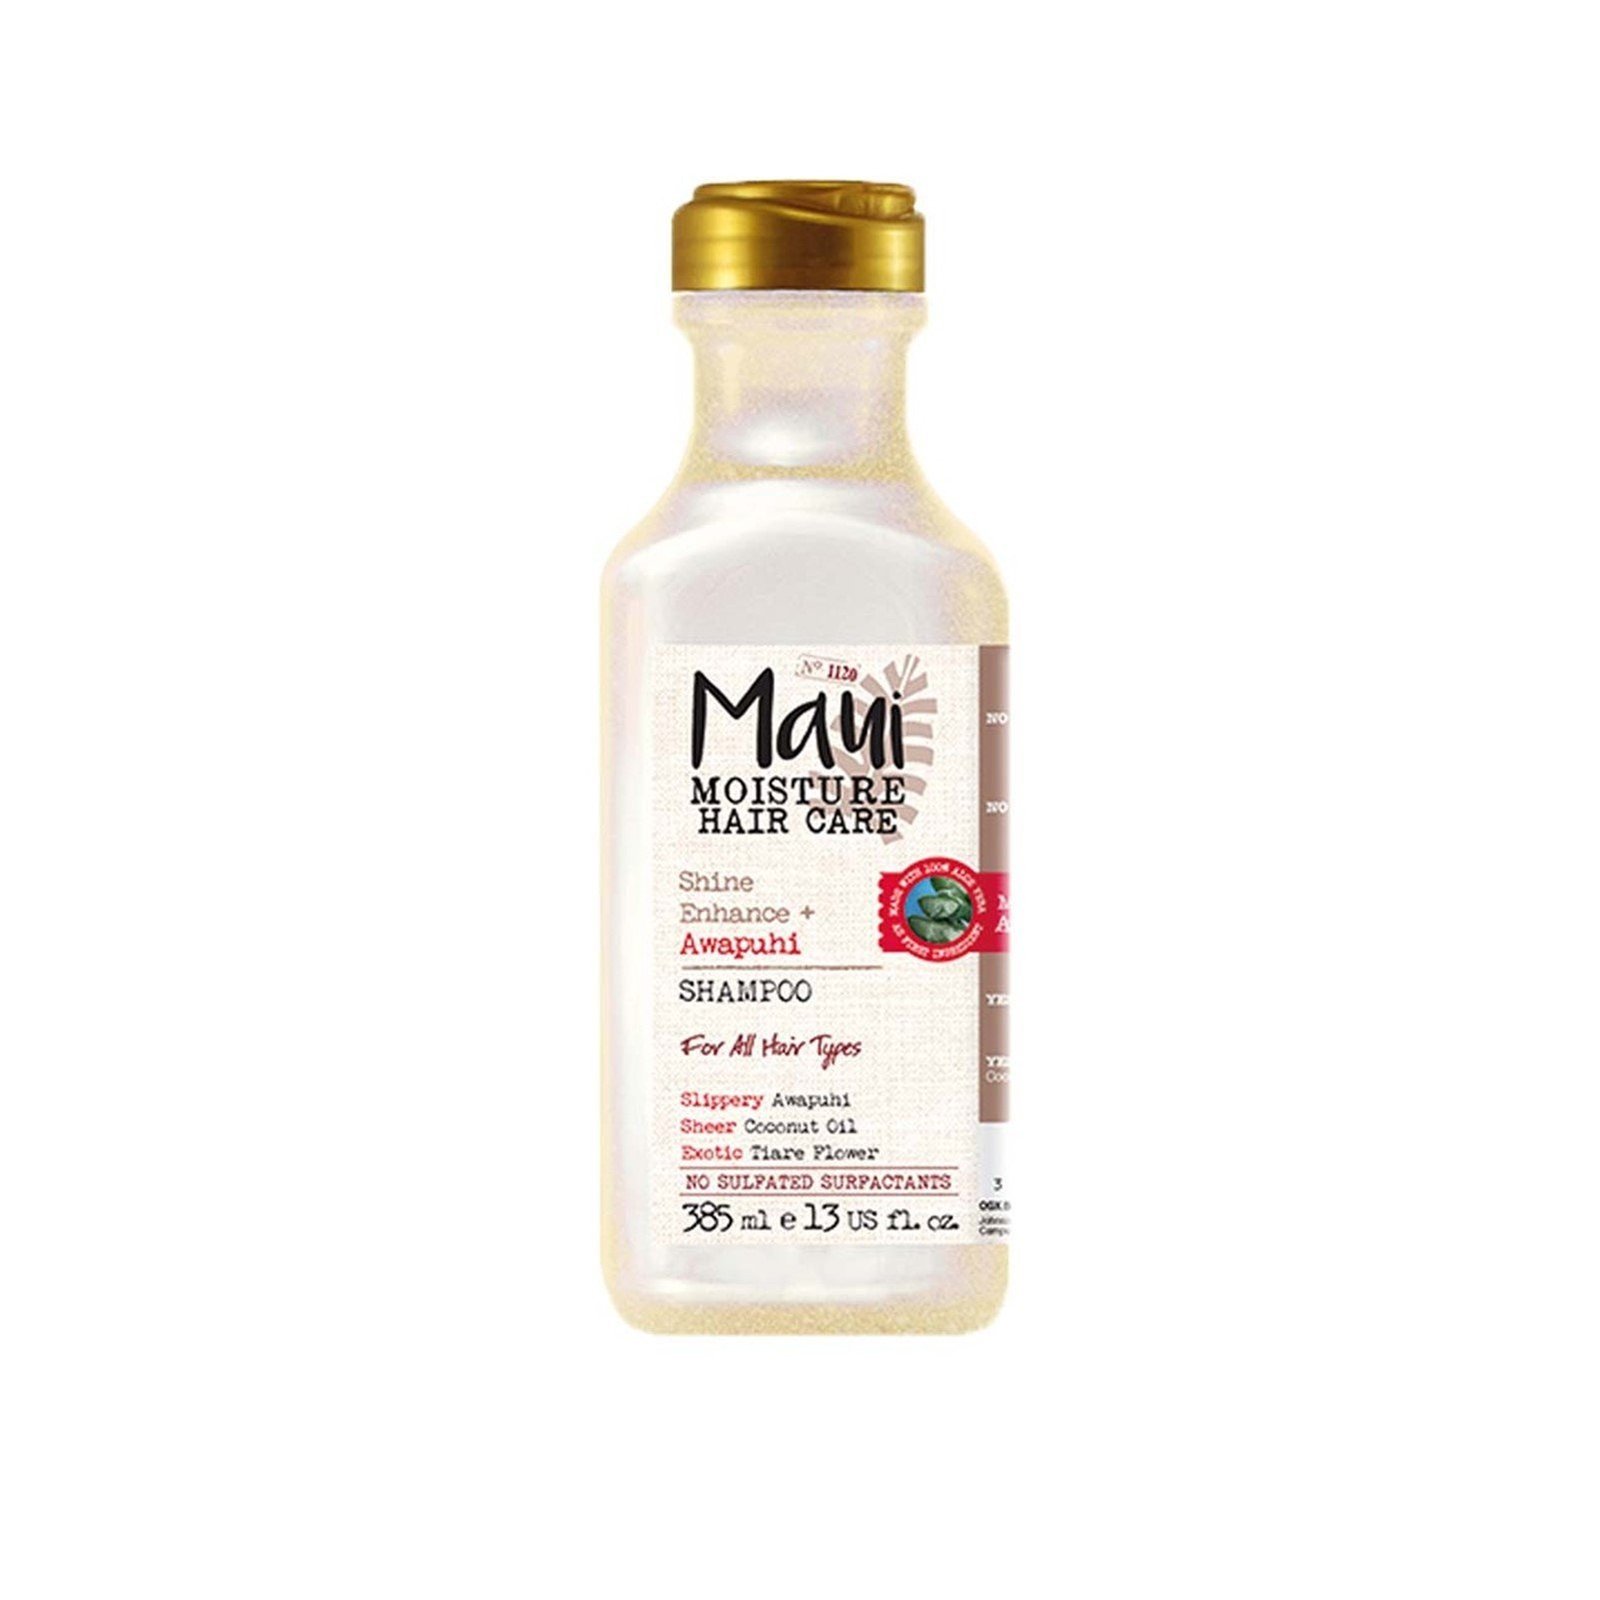 Maui Moisture Shine Enhance + Awapuhi Shampoo 385ml (13floz)